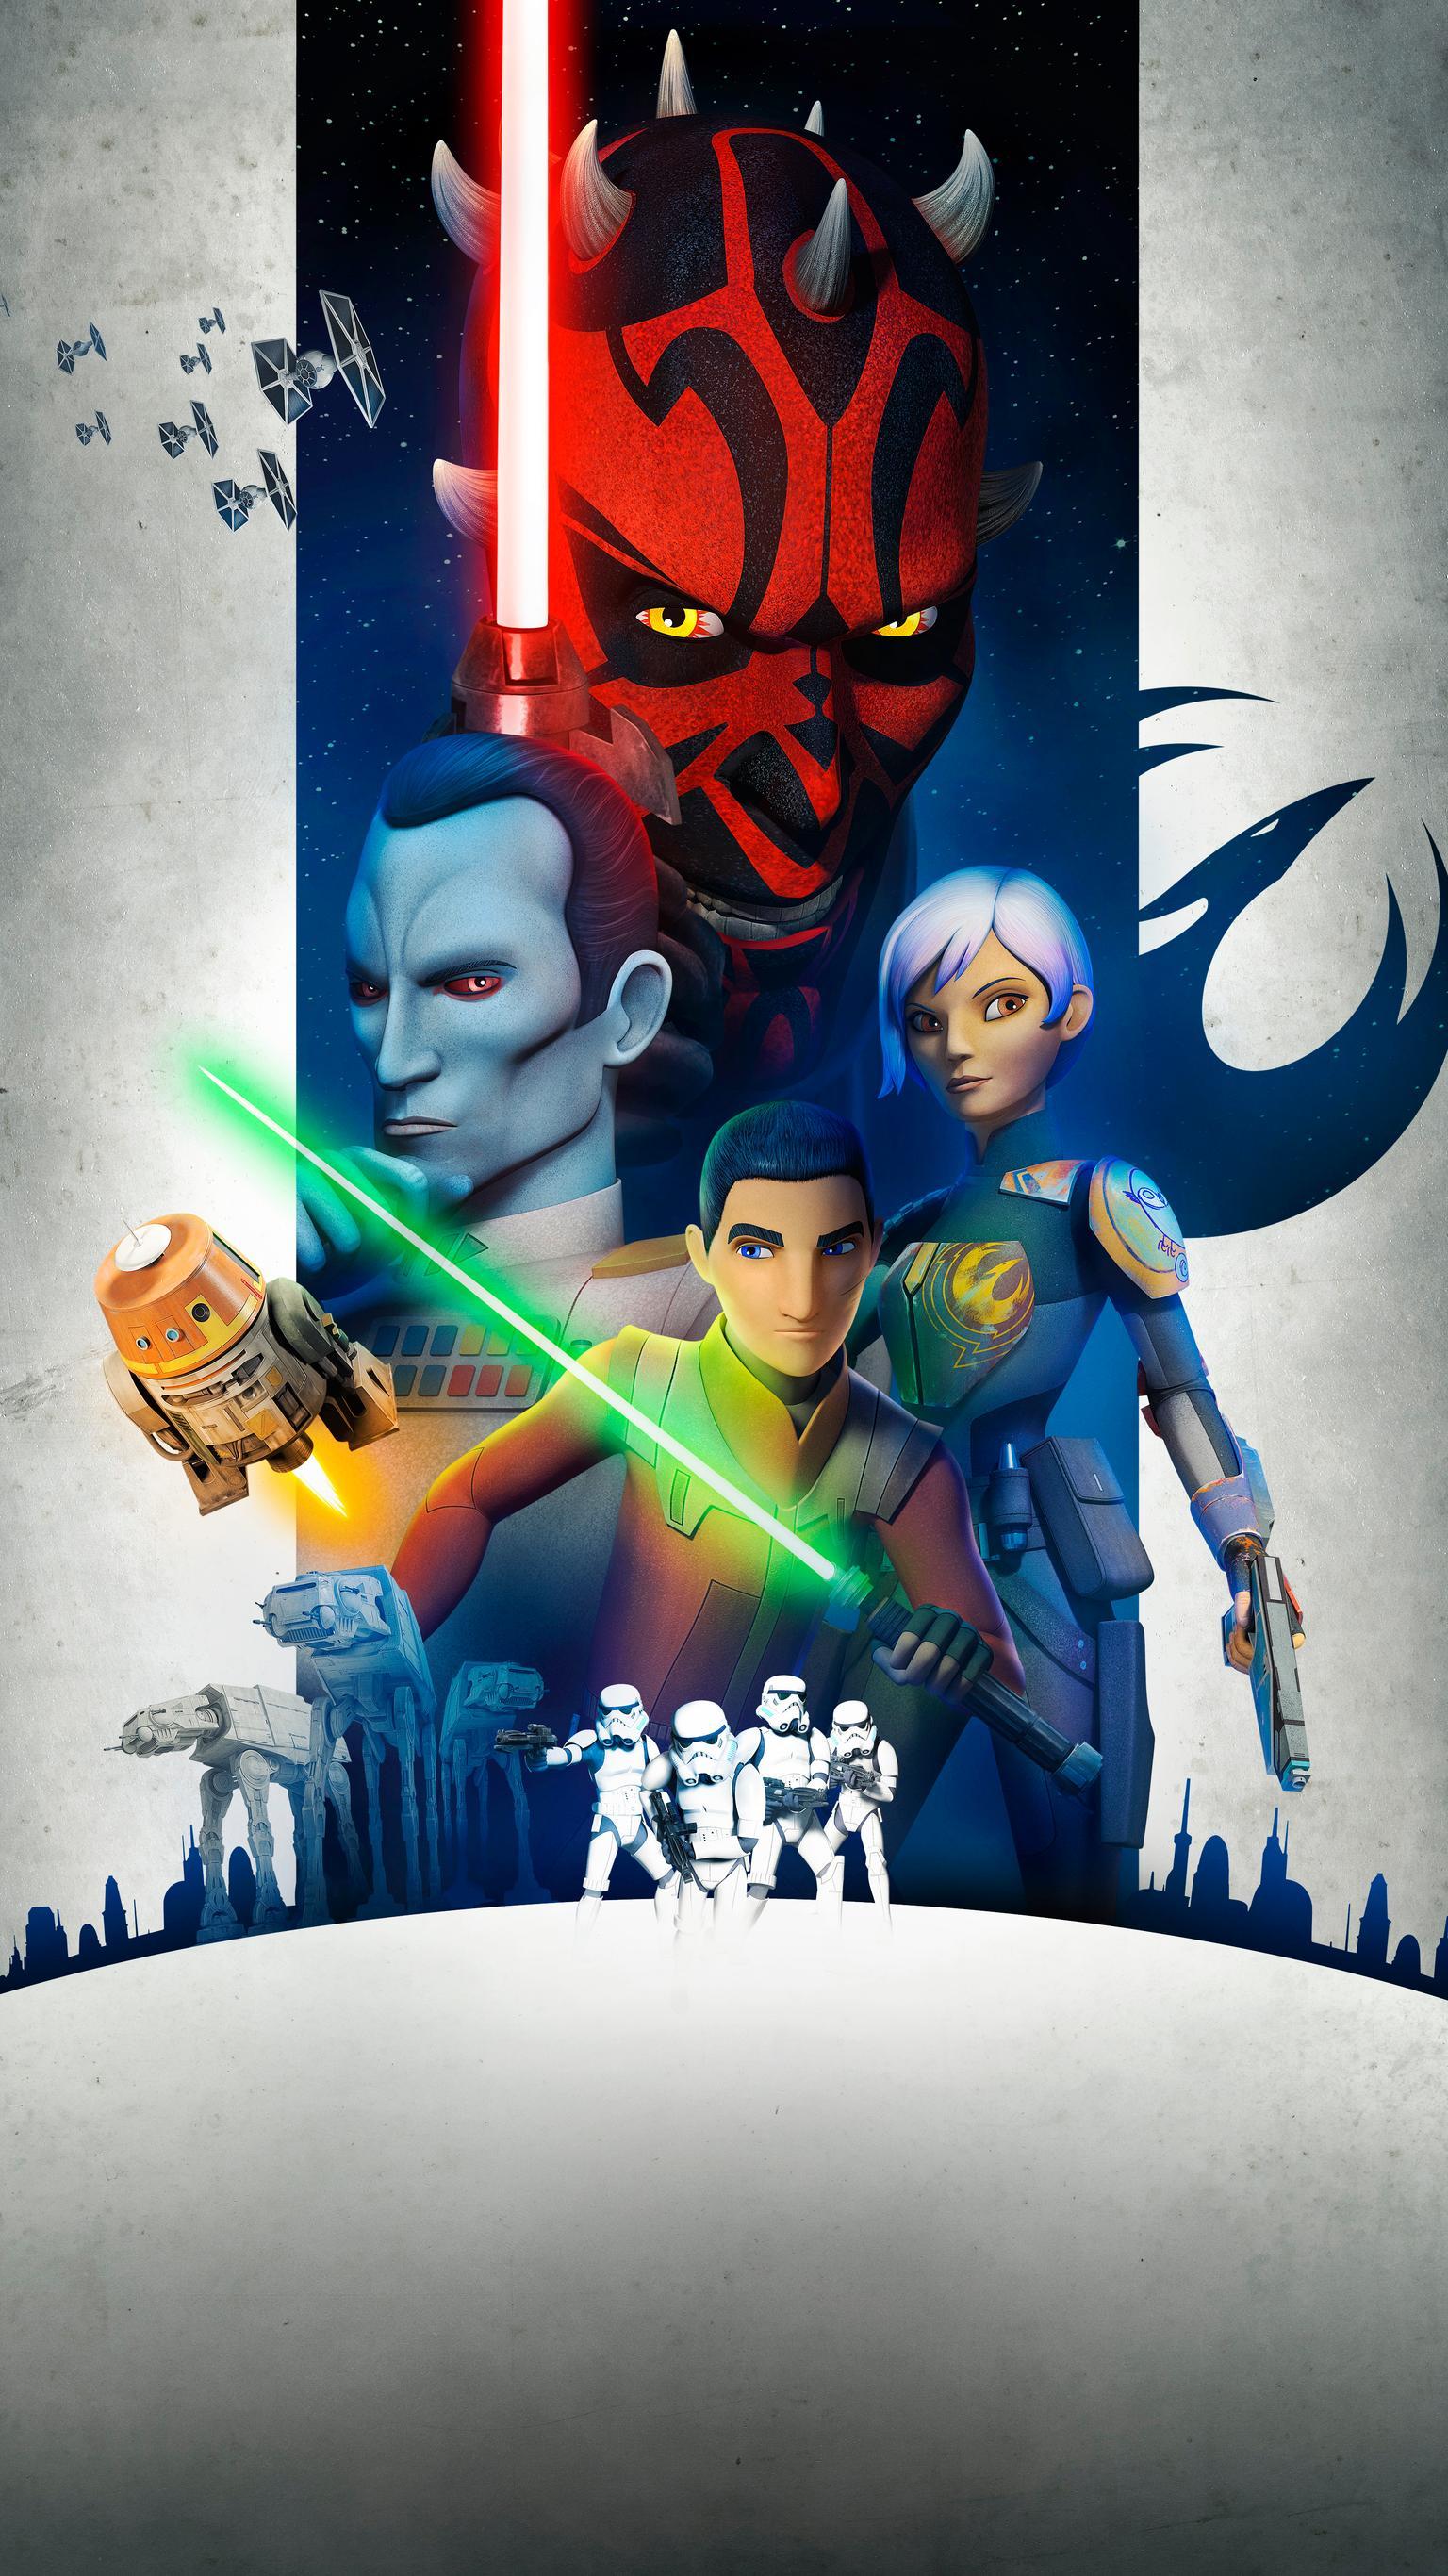 Star Wars Rebels Wallpapers Top Free Star Wars Rebels